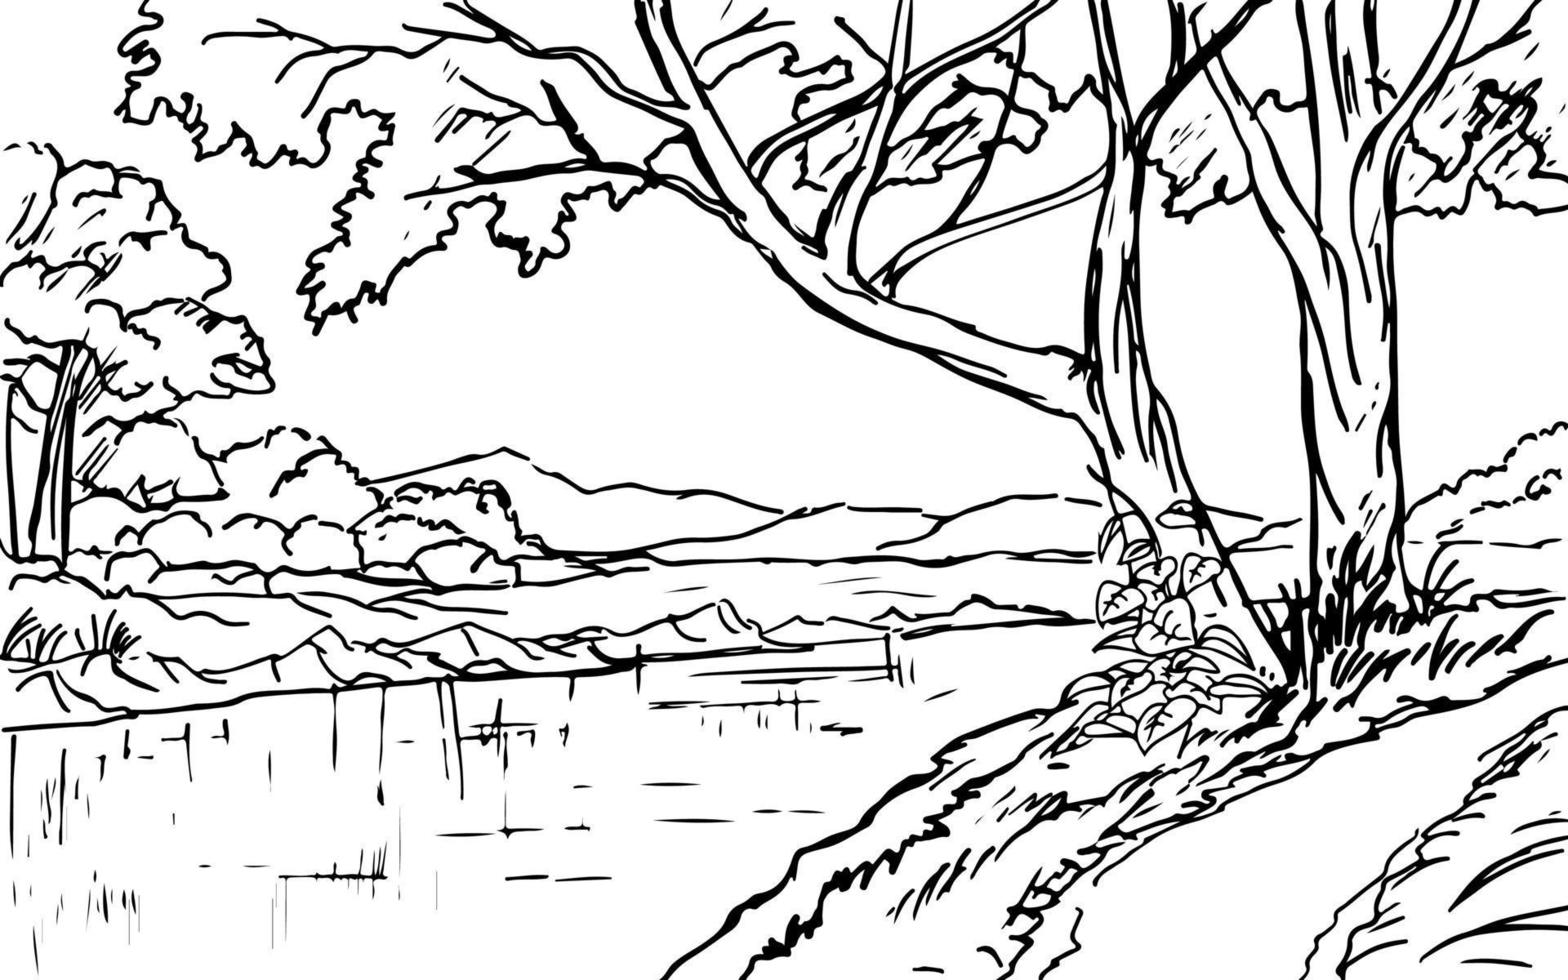 Rural forest landscape with river sketch illustration vector